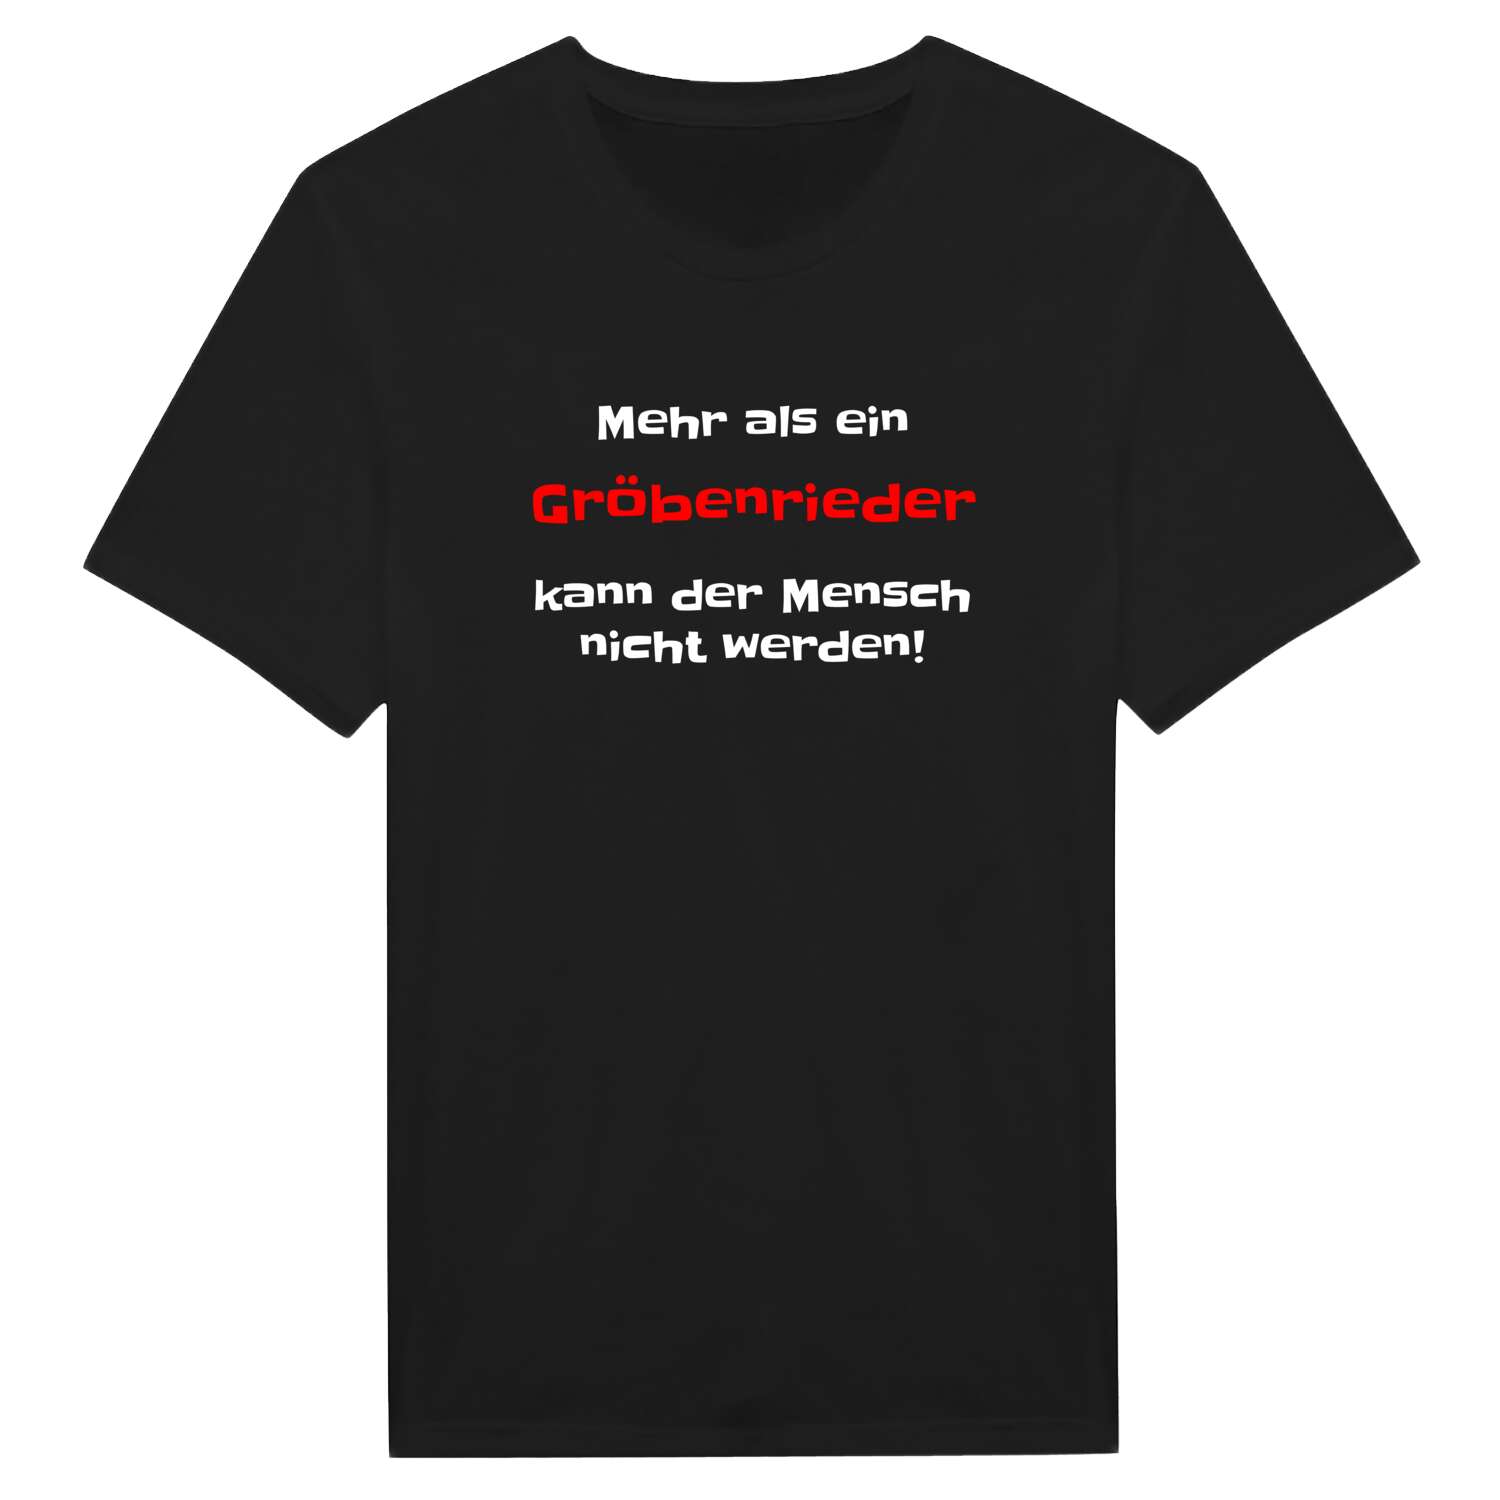 Gröbenried T-Shirt »Mehr als ein«